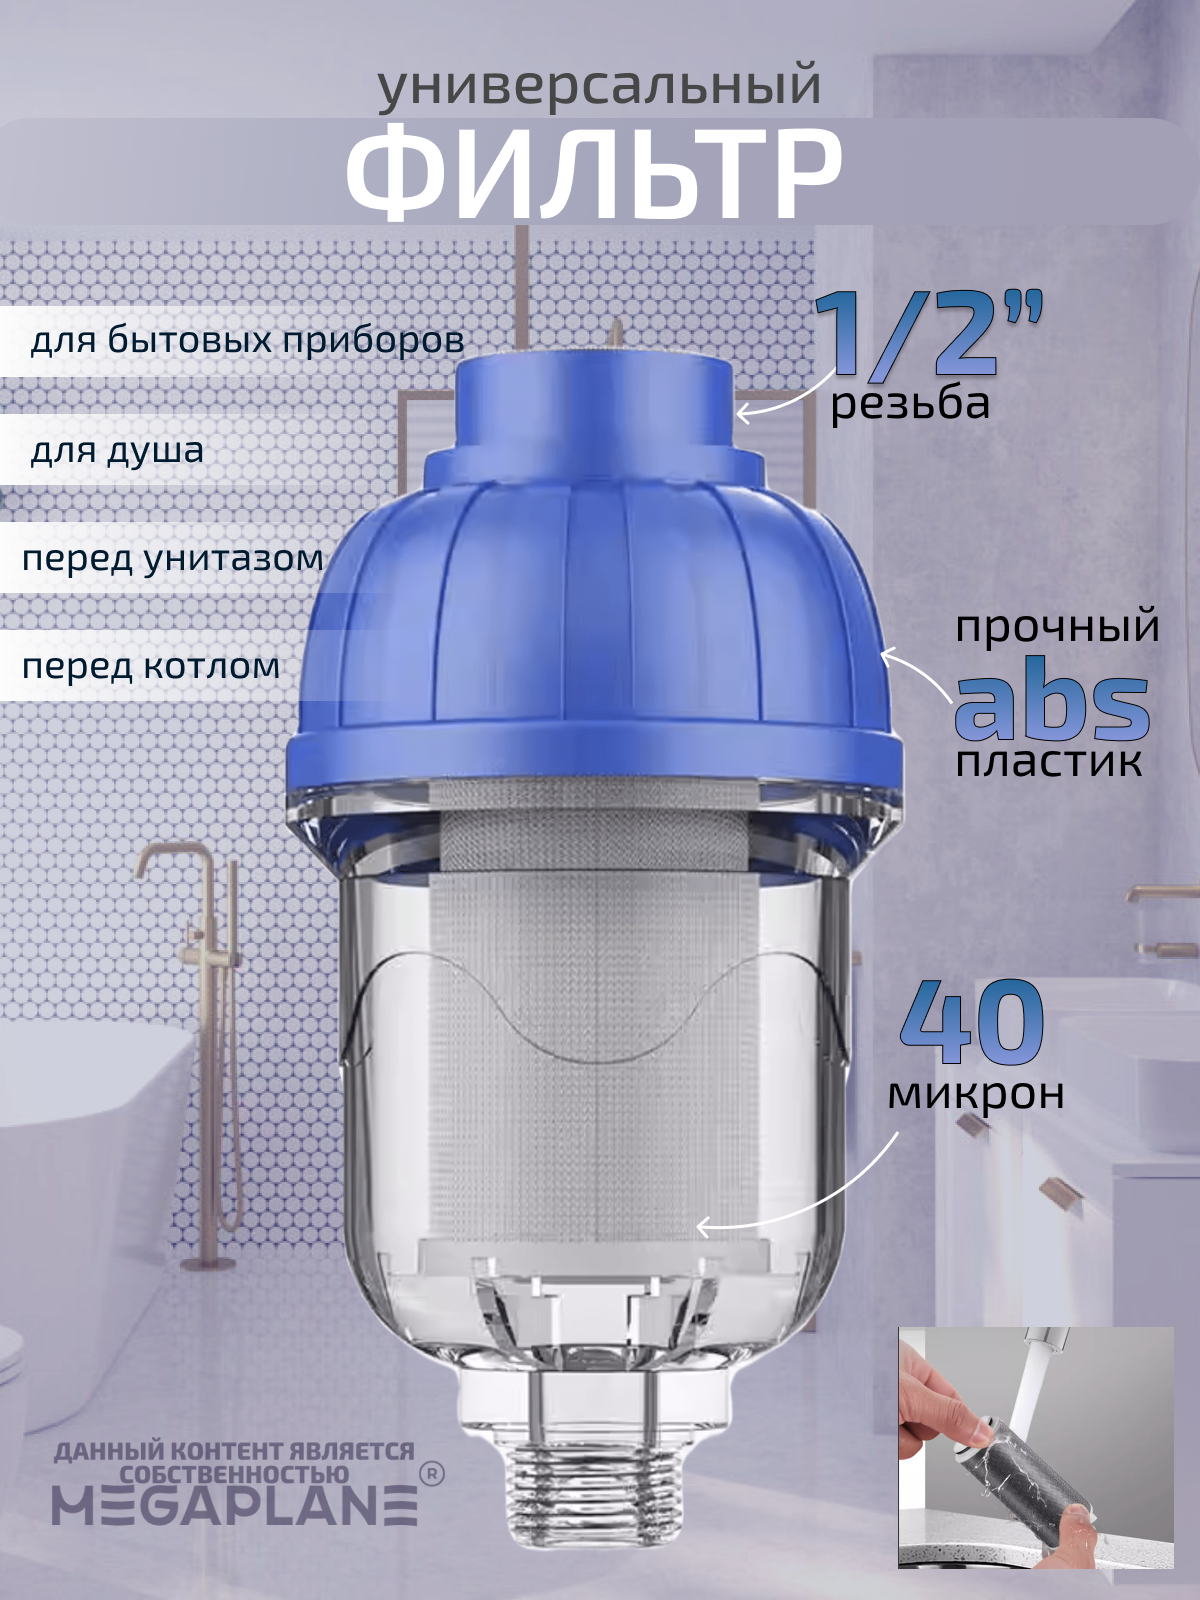 Универсальный фильтр воды для душа и бытовых приборов